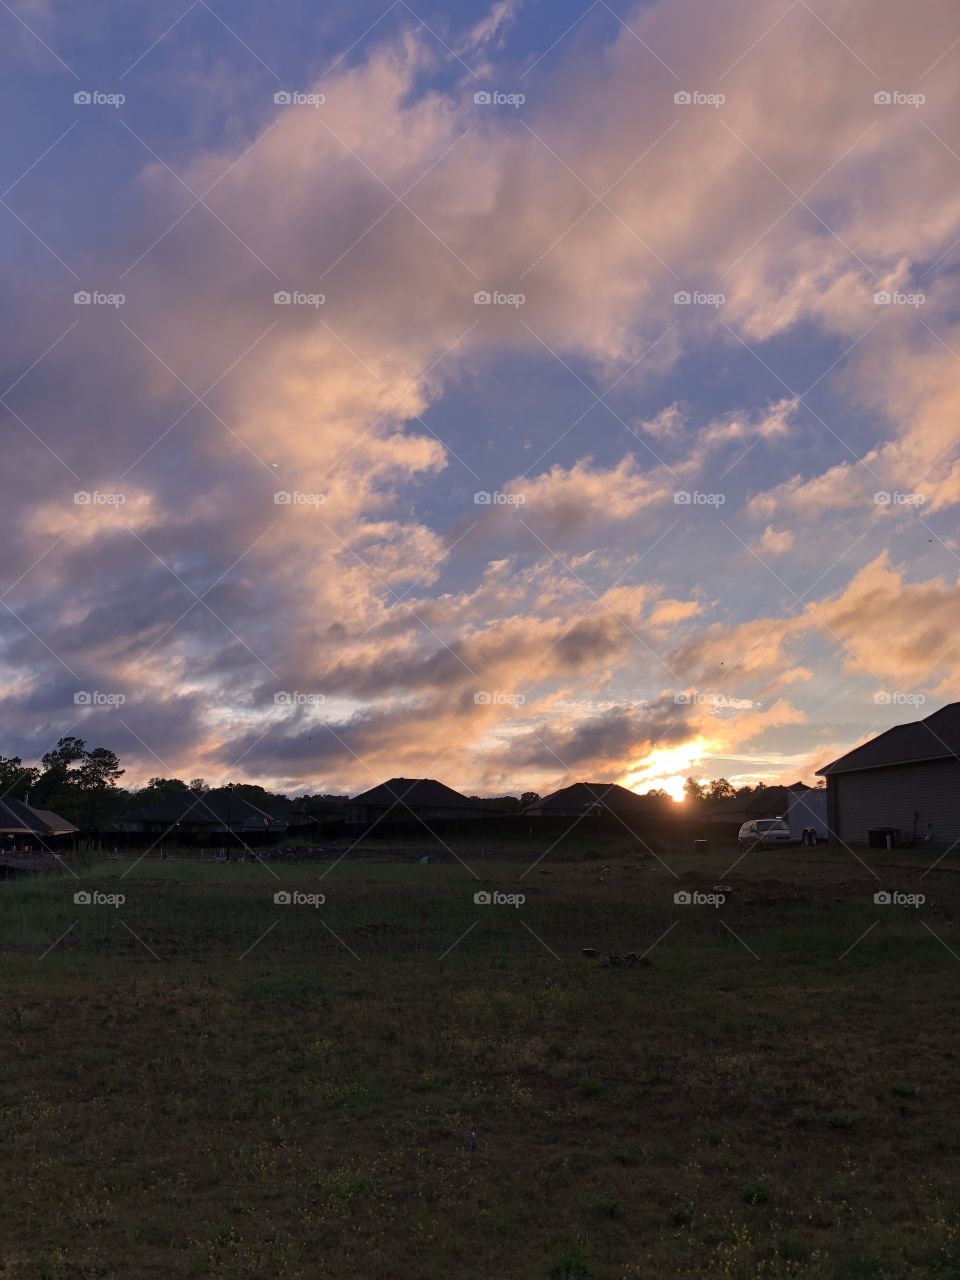 Arkansas sunset 